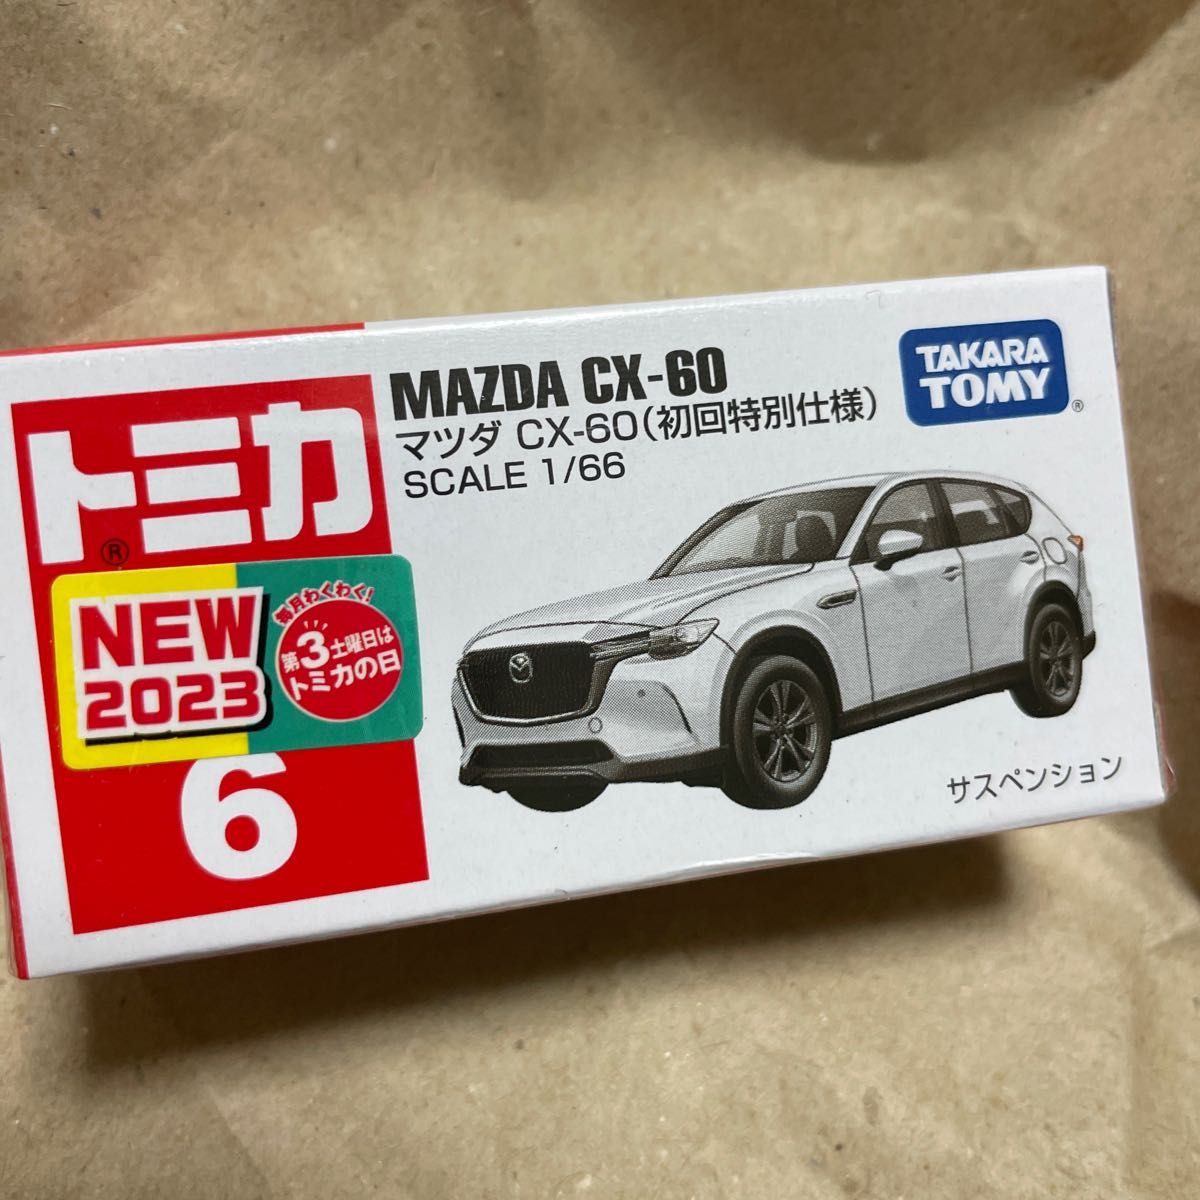 トミカ MAZDA No.6 マツダ CX-60 初回特別仕様初回限定 TOMICA ホワイトカラー